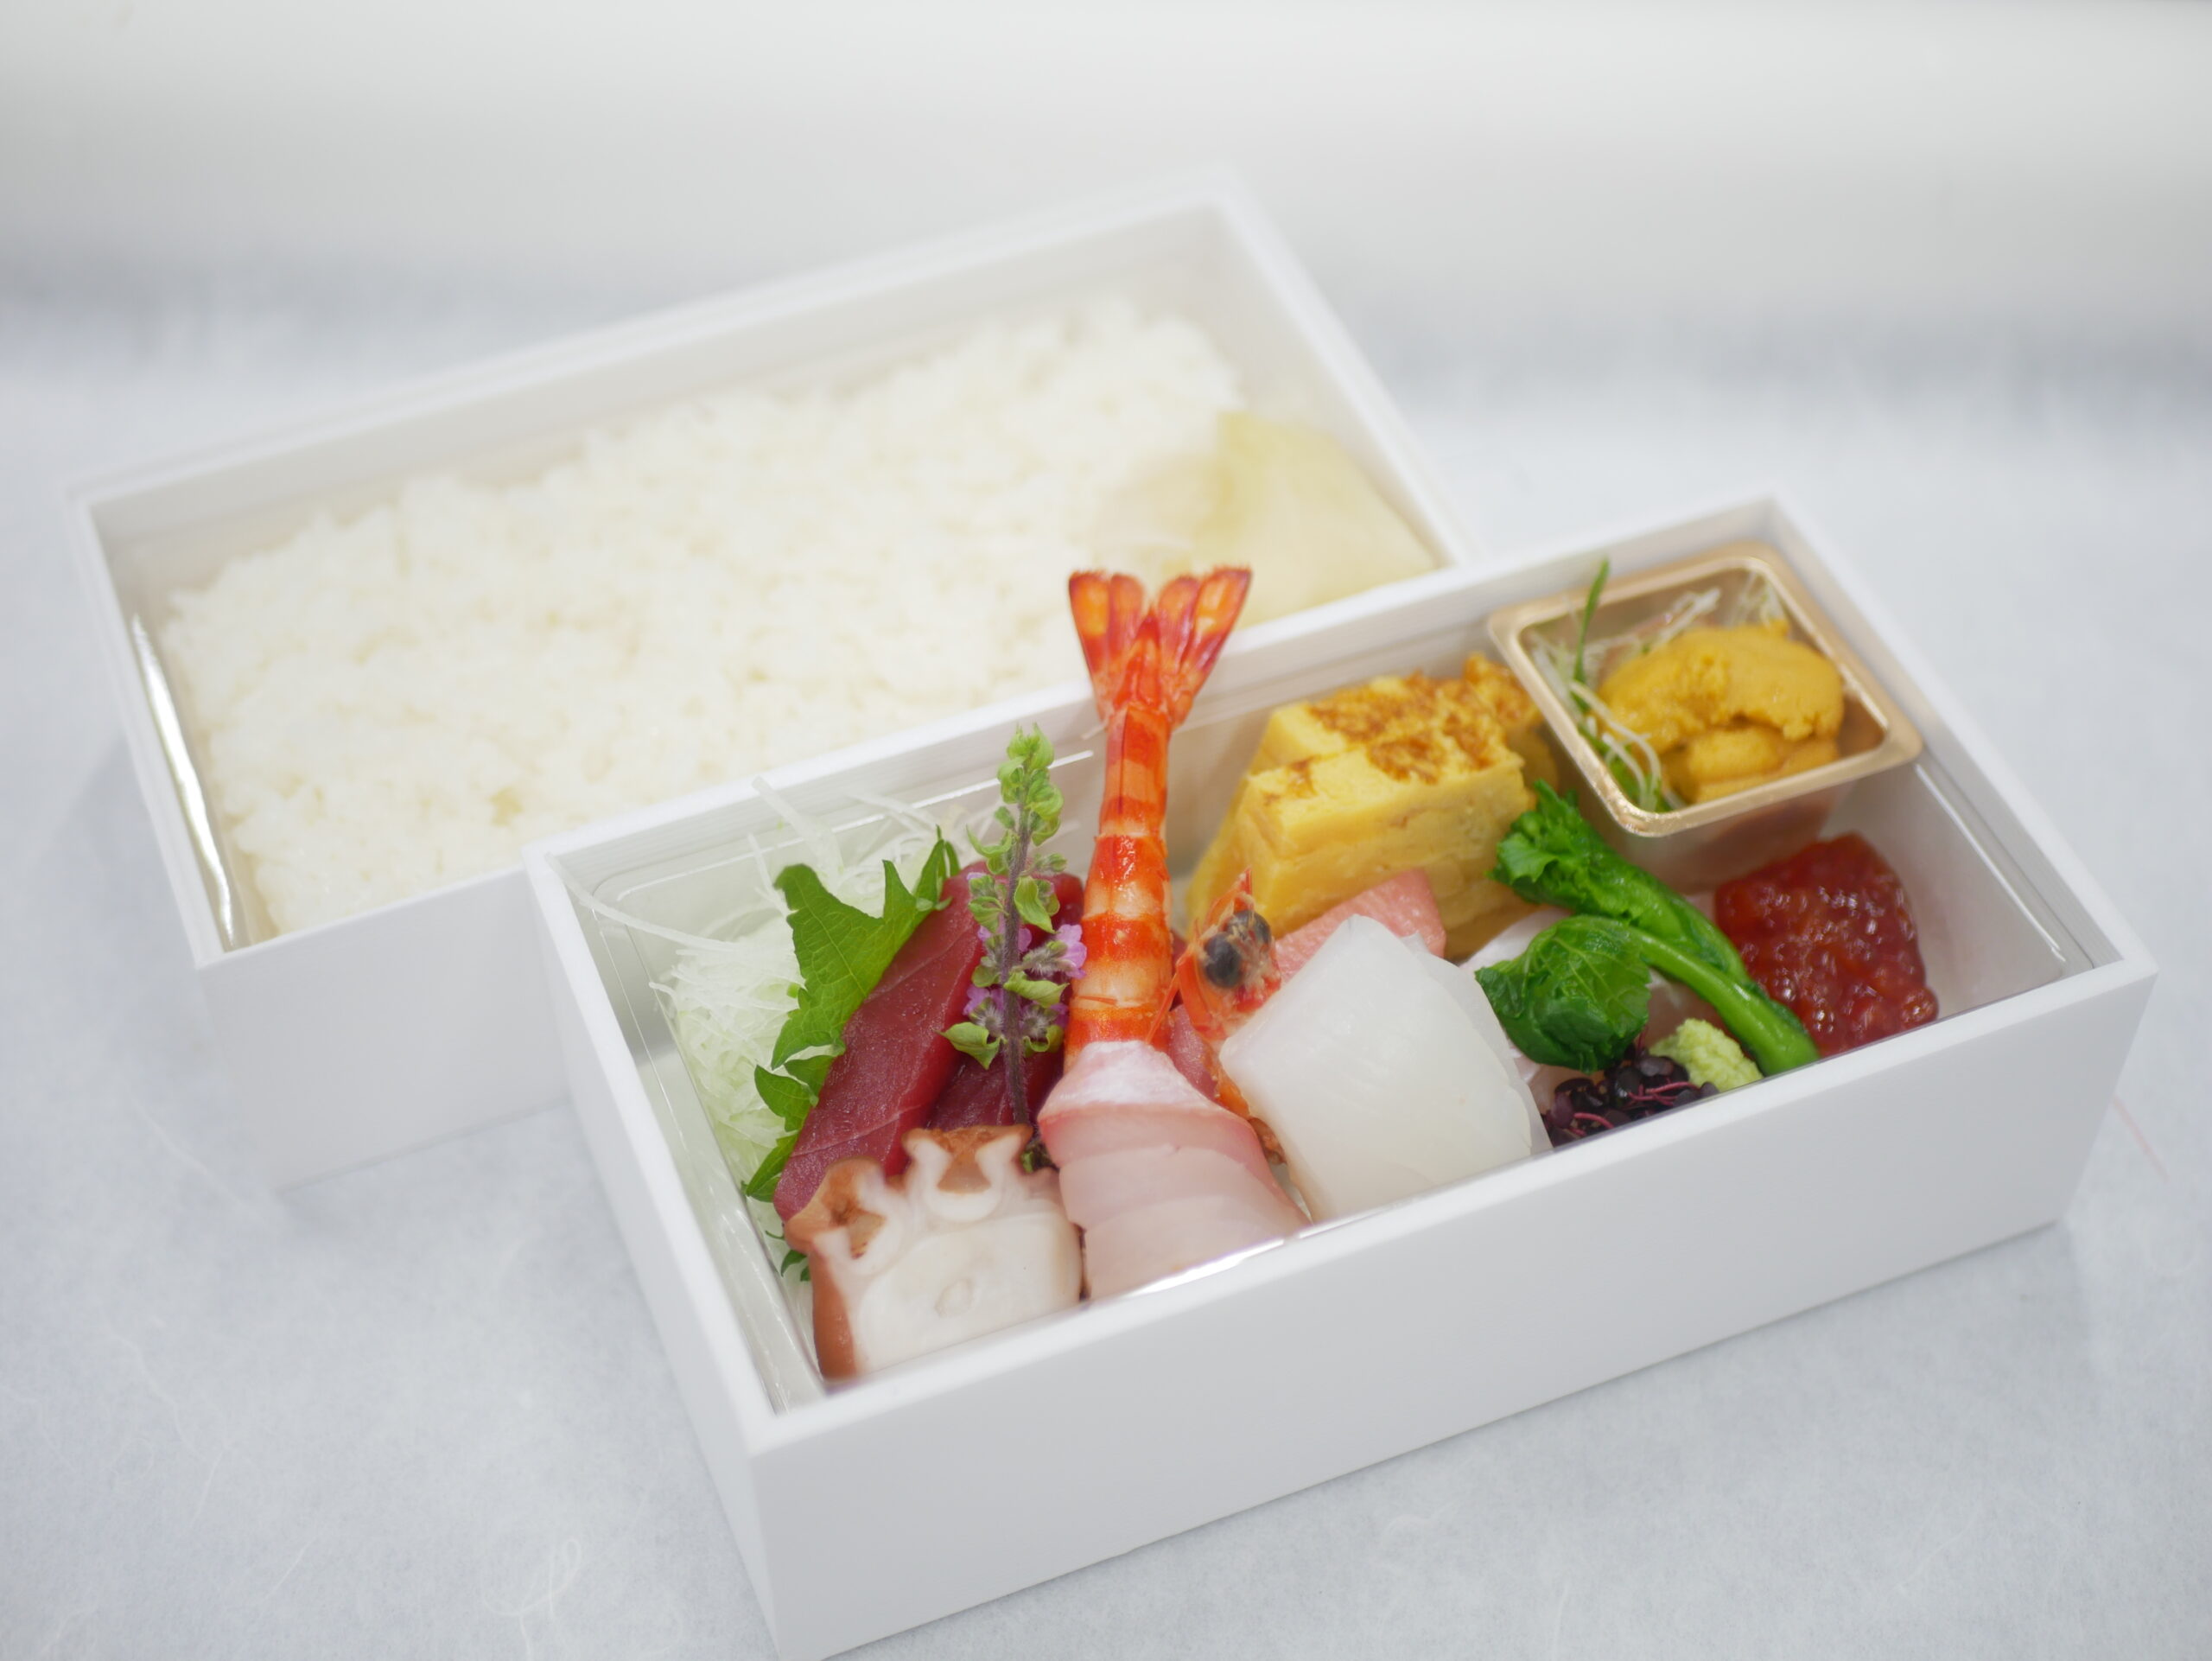 【海鮮丼】5,400円<p>新鮮な海の幸とご飯を 別盛でご用意いたします。 ご飯は白ご飯または酢飯をお選びいただけます。</p>
